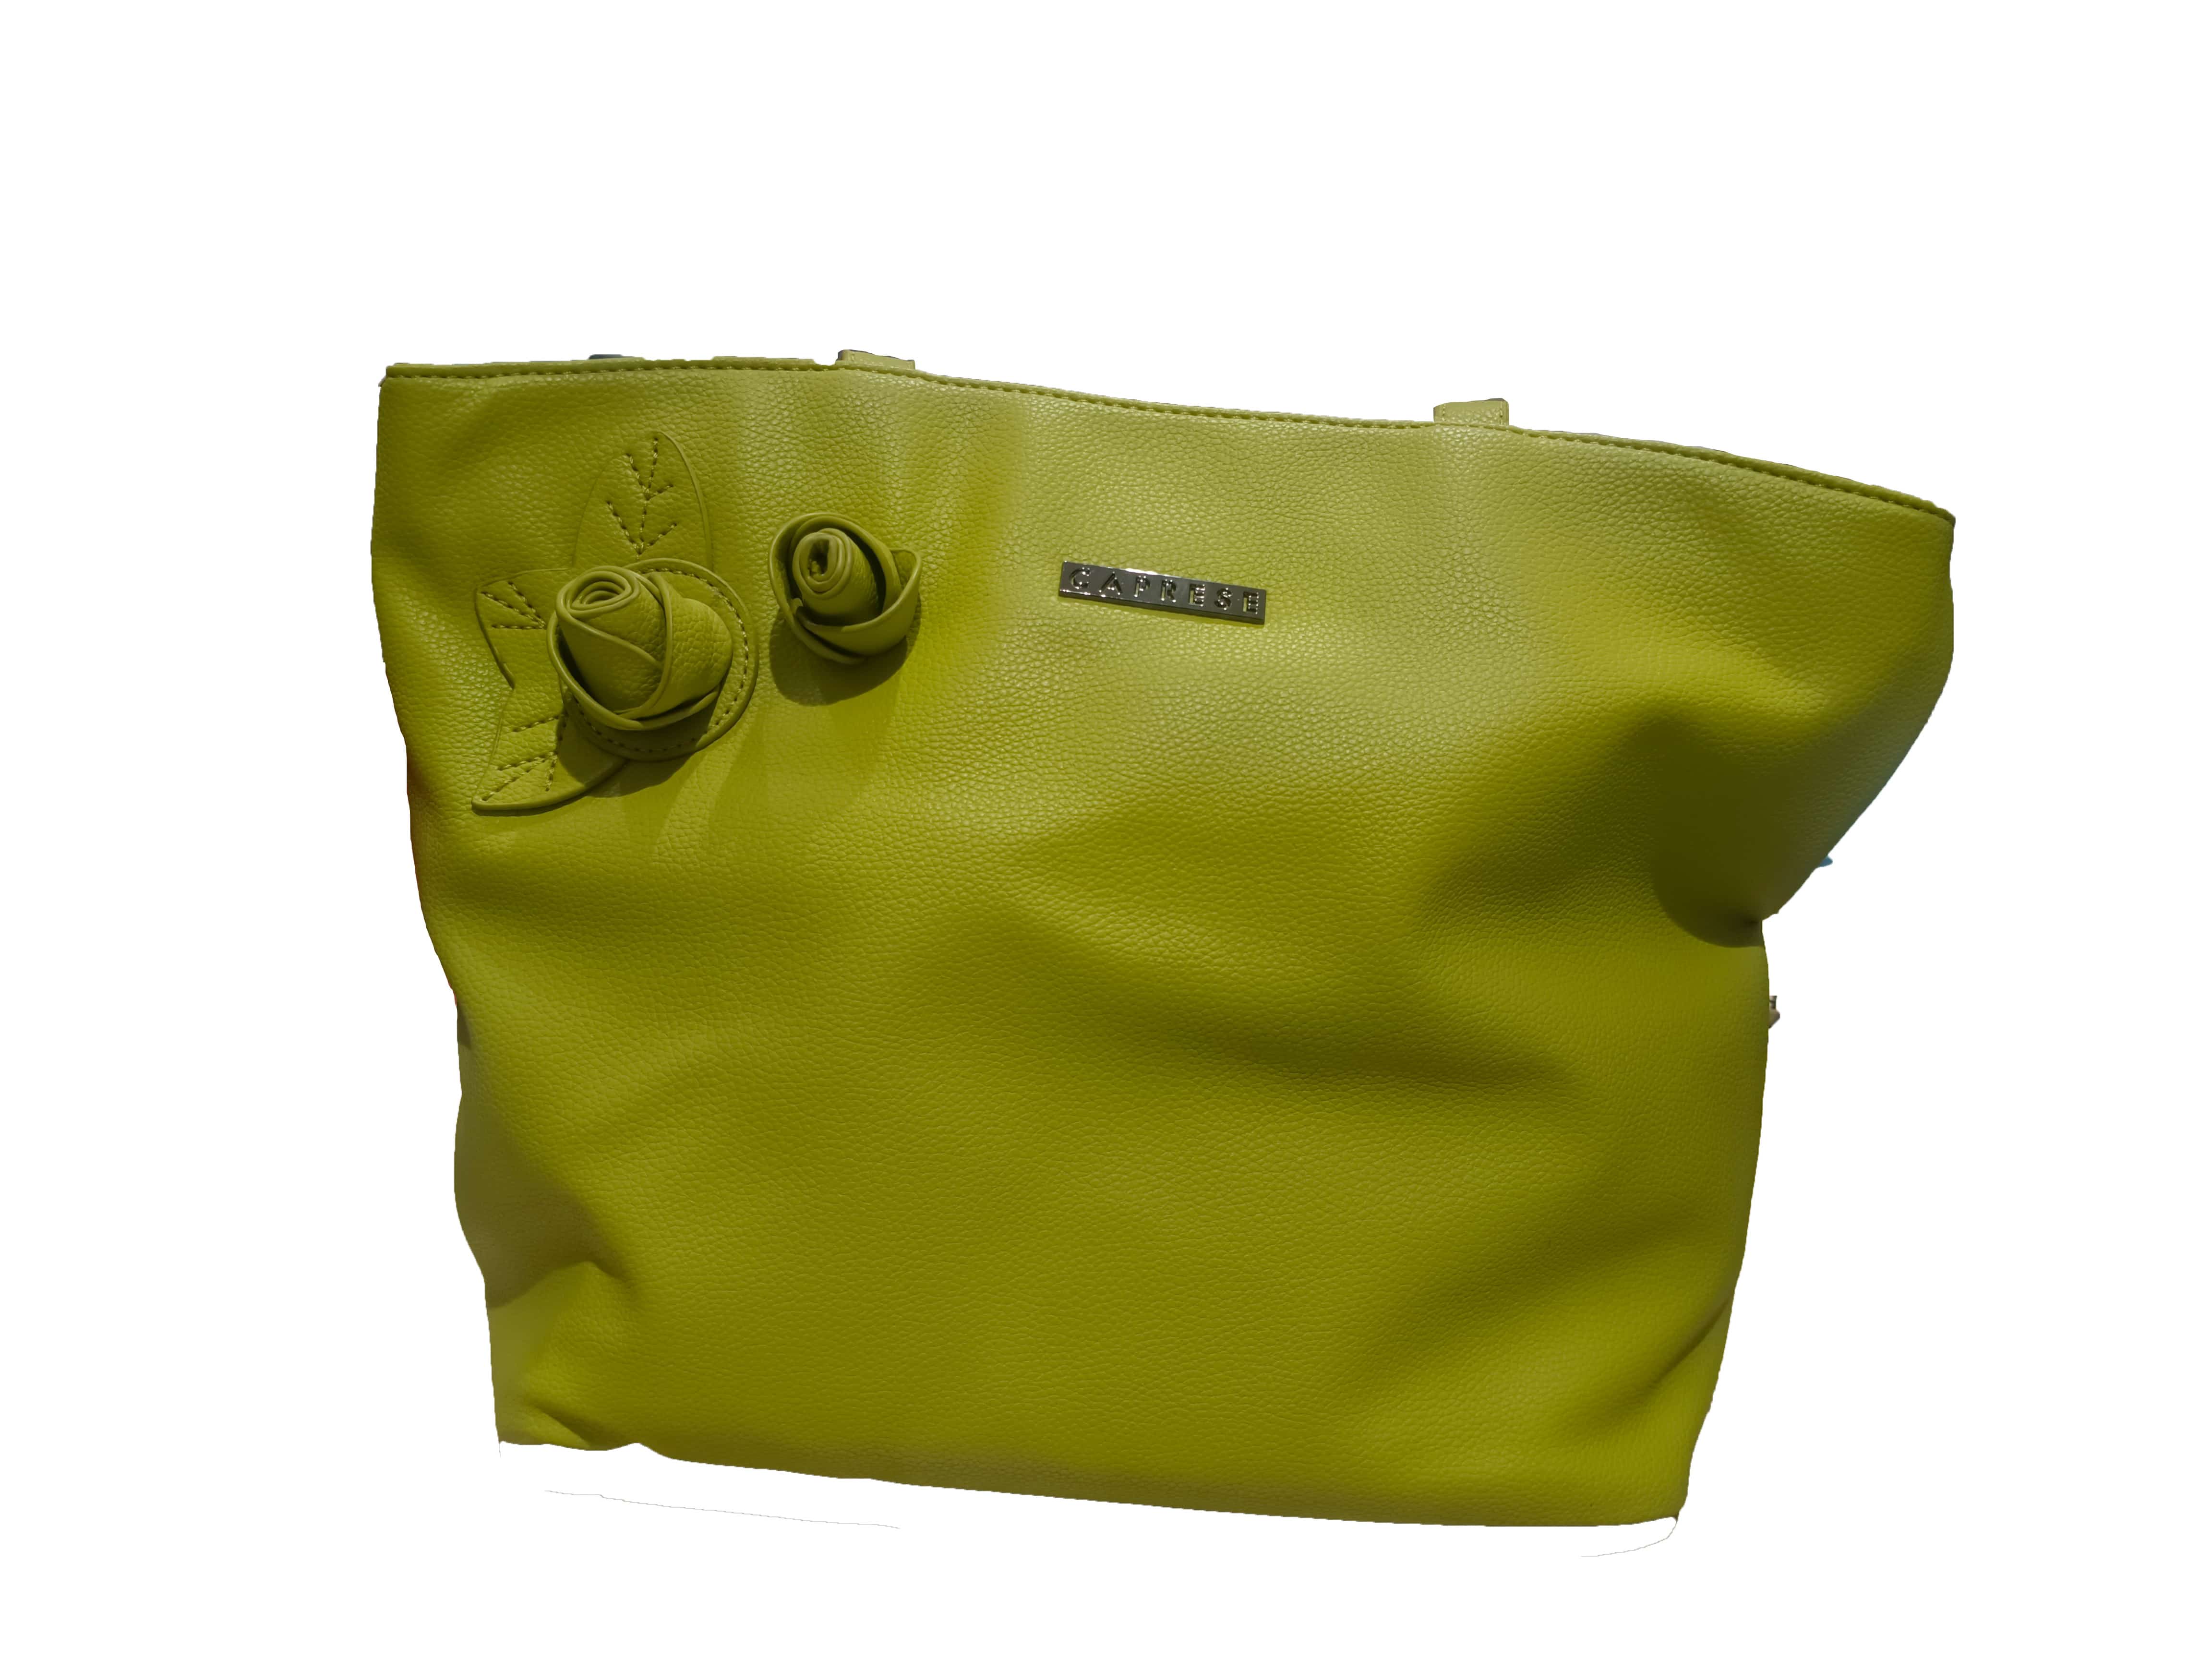 Light green handbag